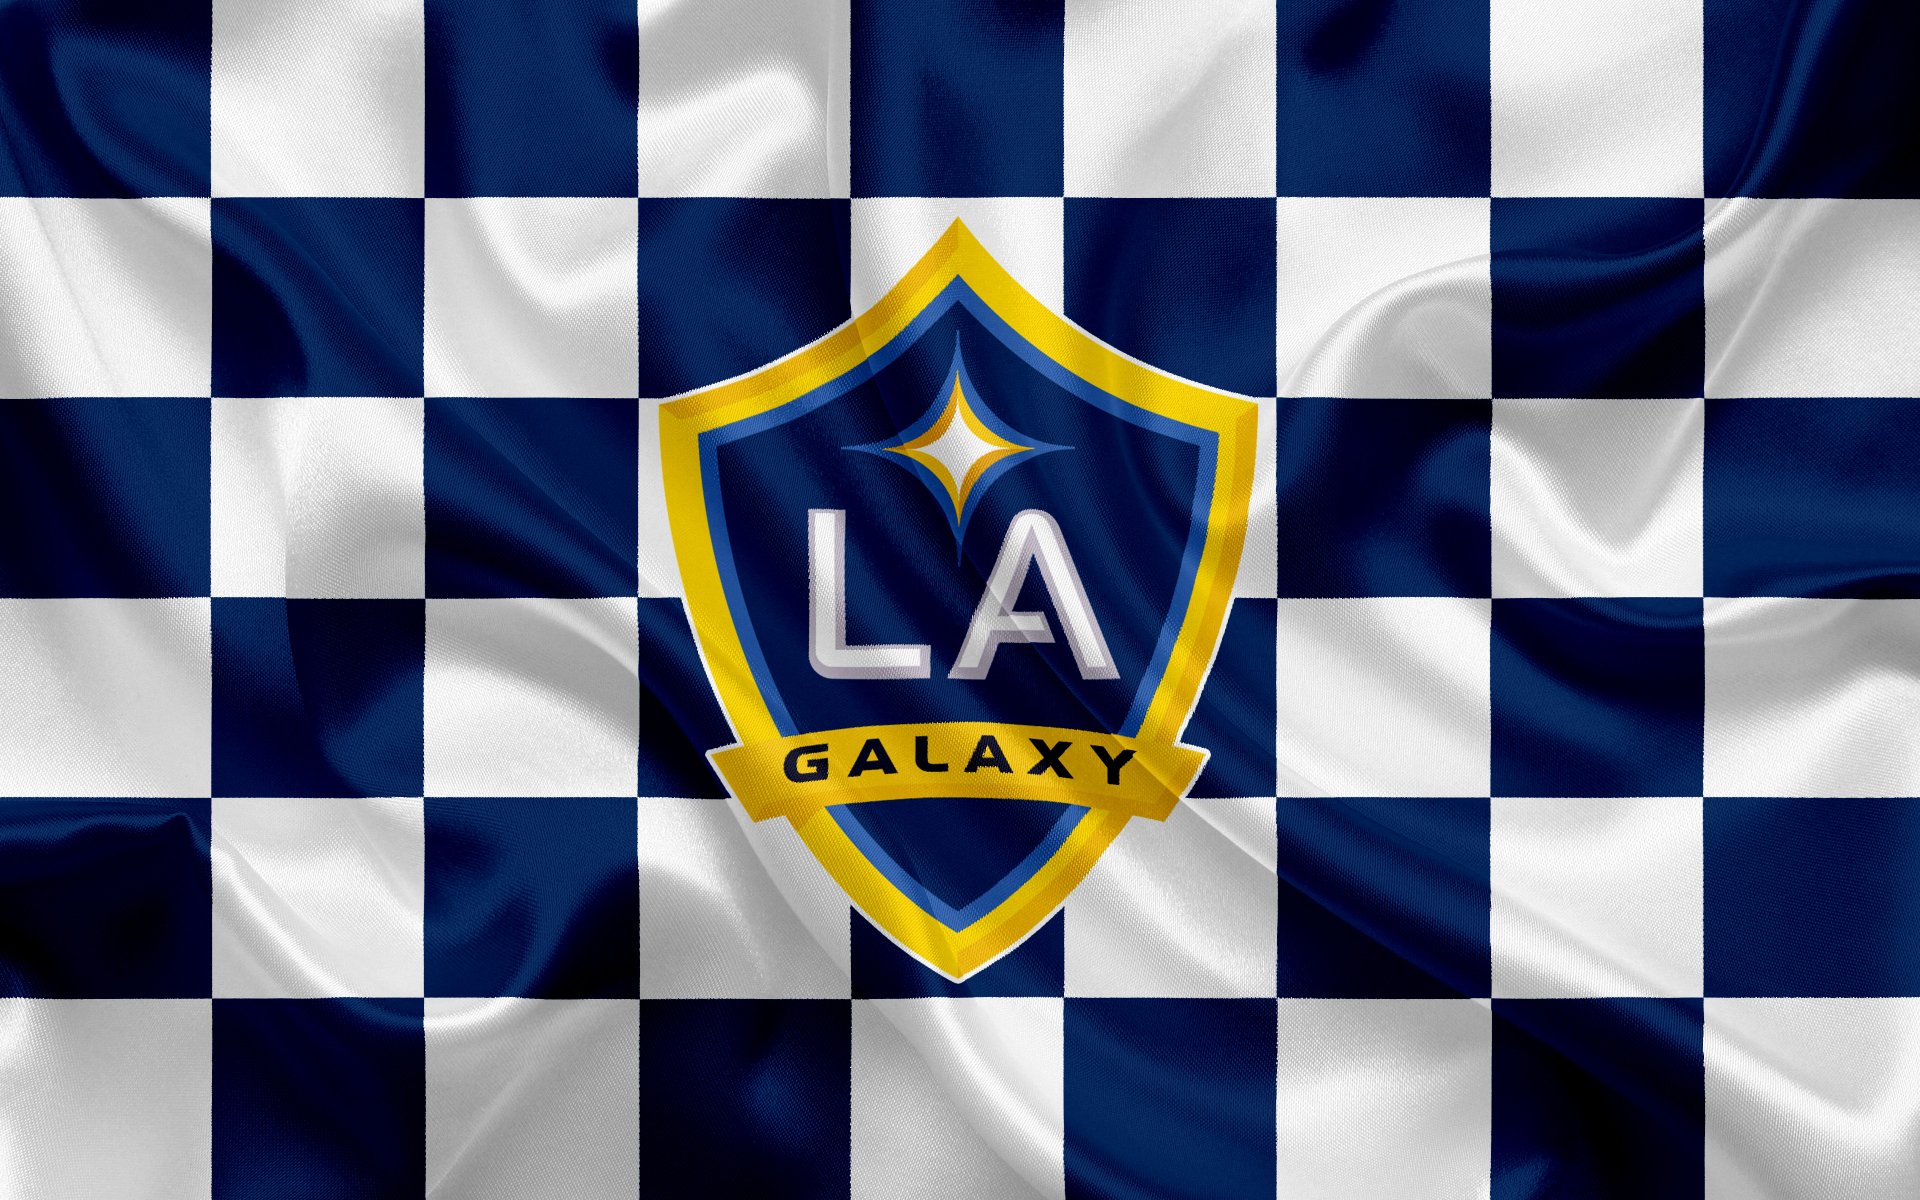 LA Galaxy 4k Ultra HD Wallpaper | Background Image | 3840x2400 | ID